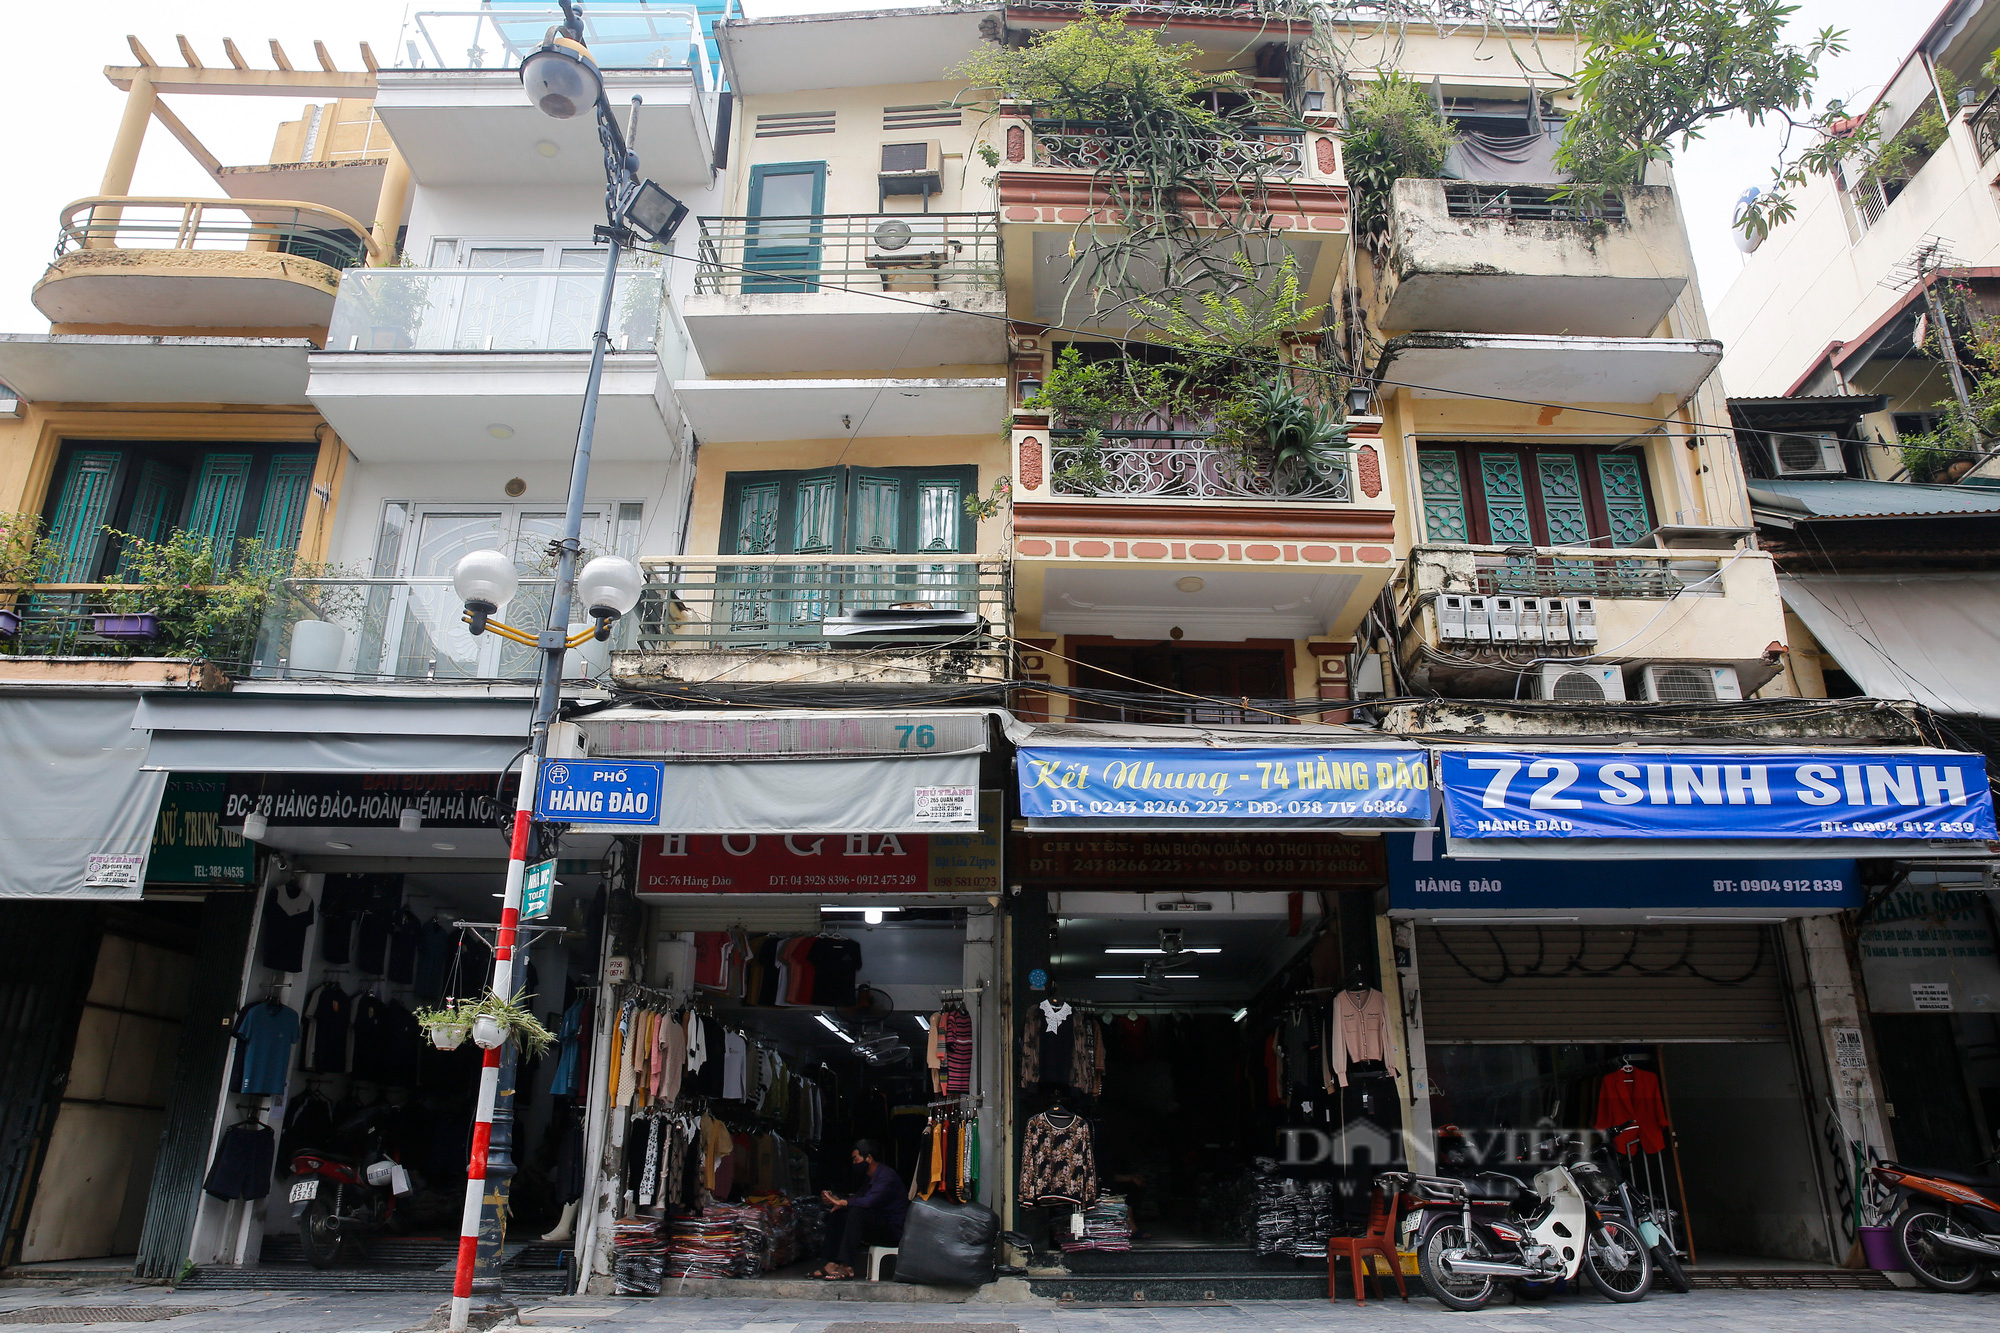 Giá thuê giảm 50%, chủ nhà vẫn bị “bùng” tiền tại phố buôn bán sầm uất nhất Hà Nội - Ảnh 2.